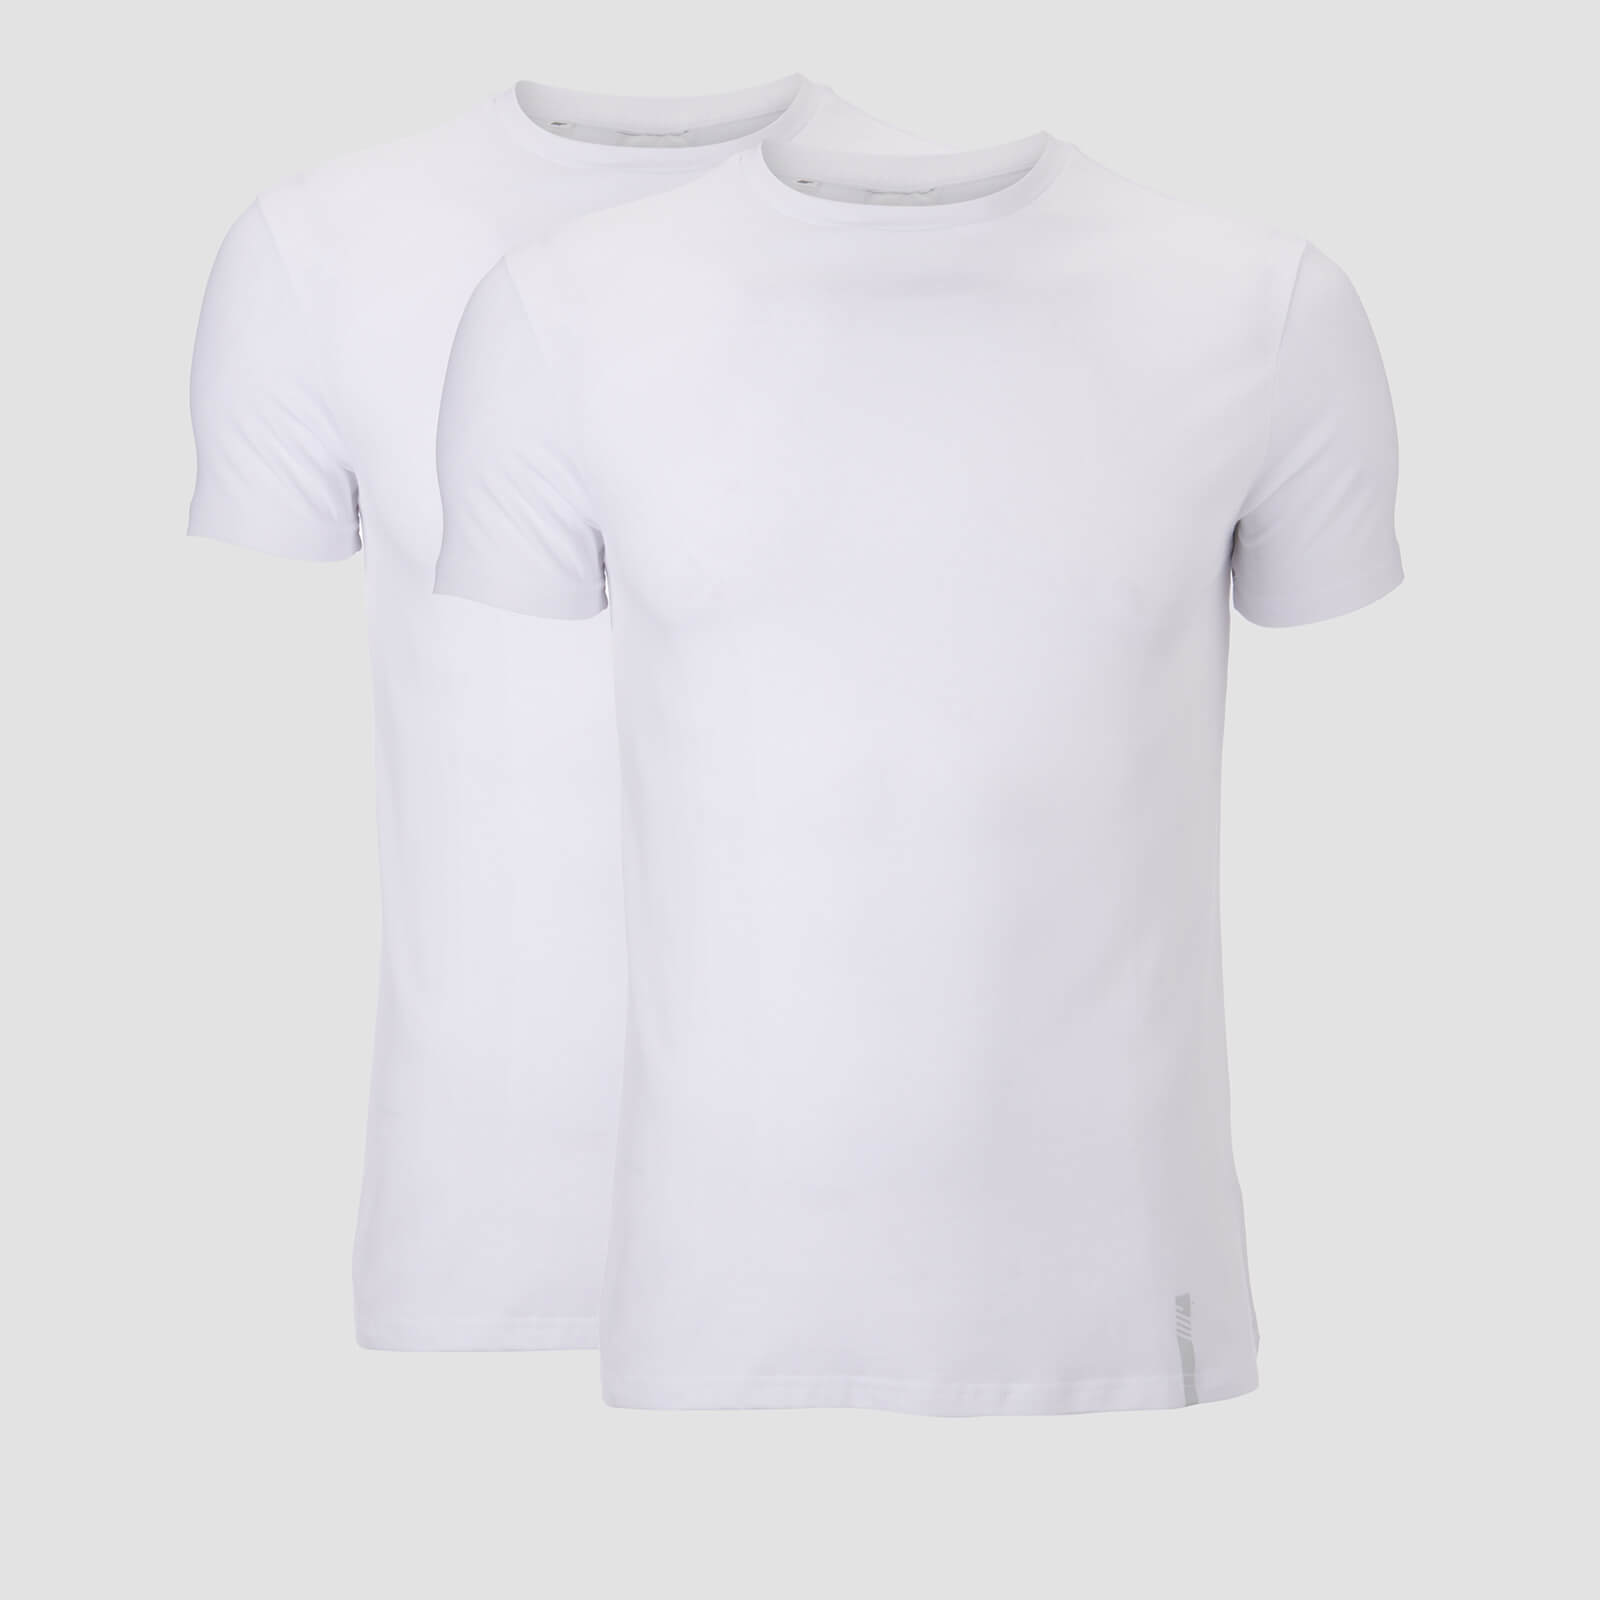 Mp T-shirt Luxe Classic (confezione da 2) - Bianco/Bianco - XL